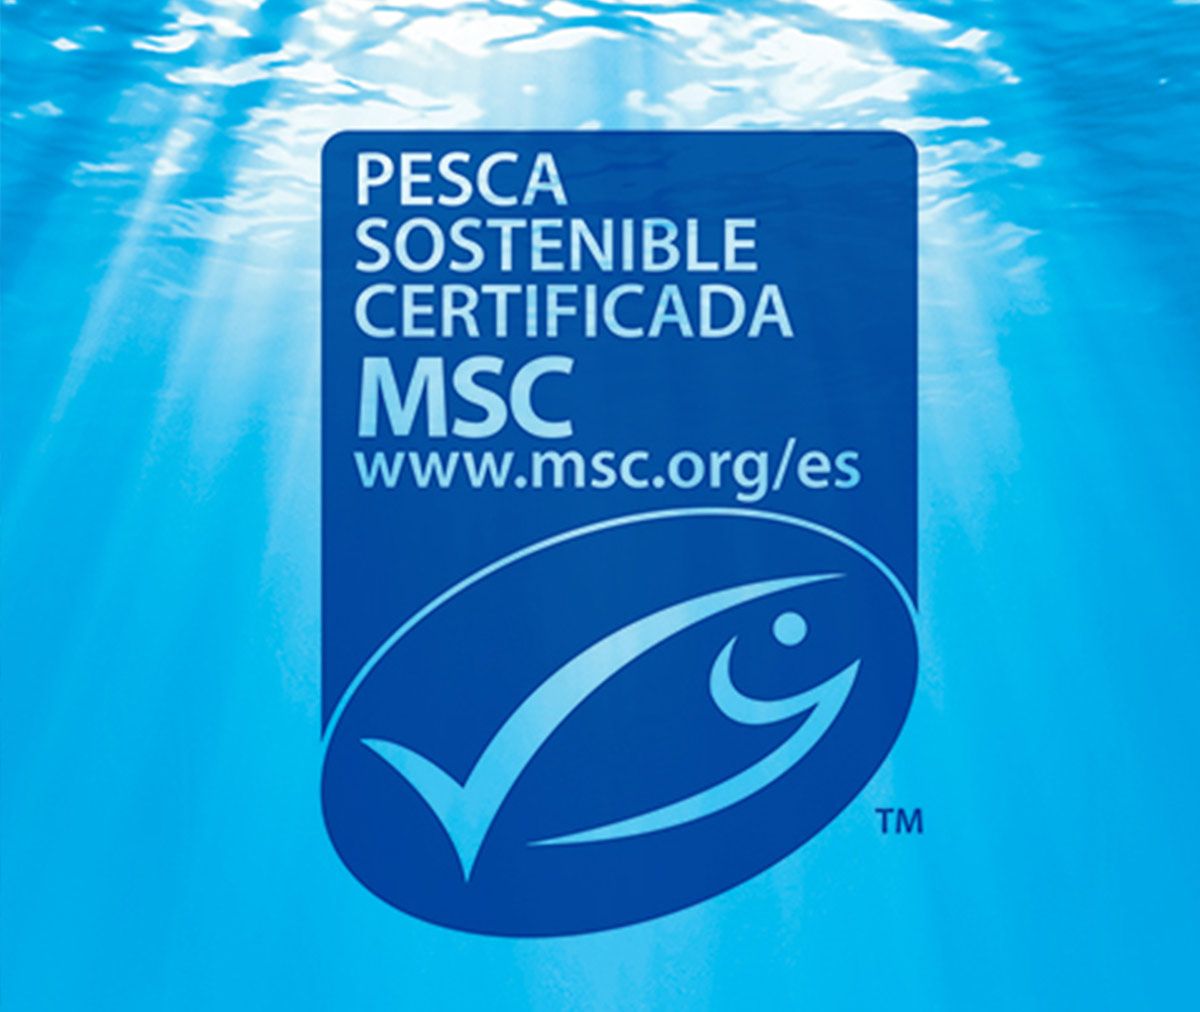 Seafreeze Limited, filial de Grupo Profand, recibe la certificación MSC de pesca sostenible